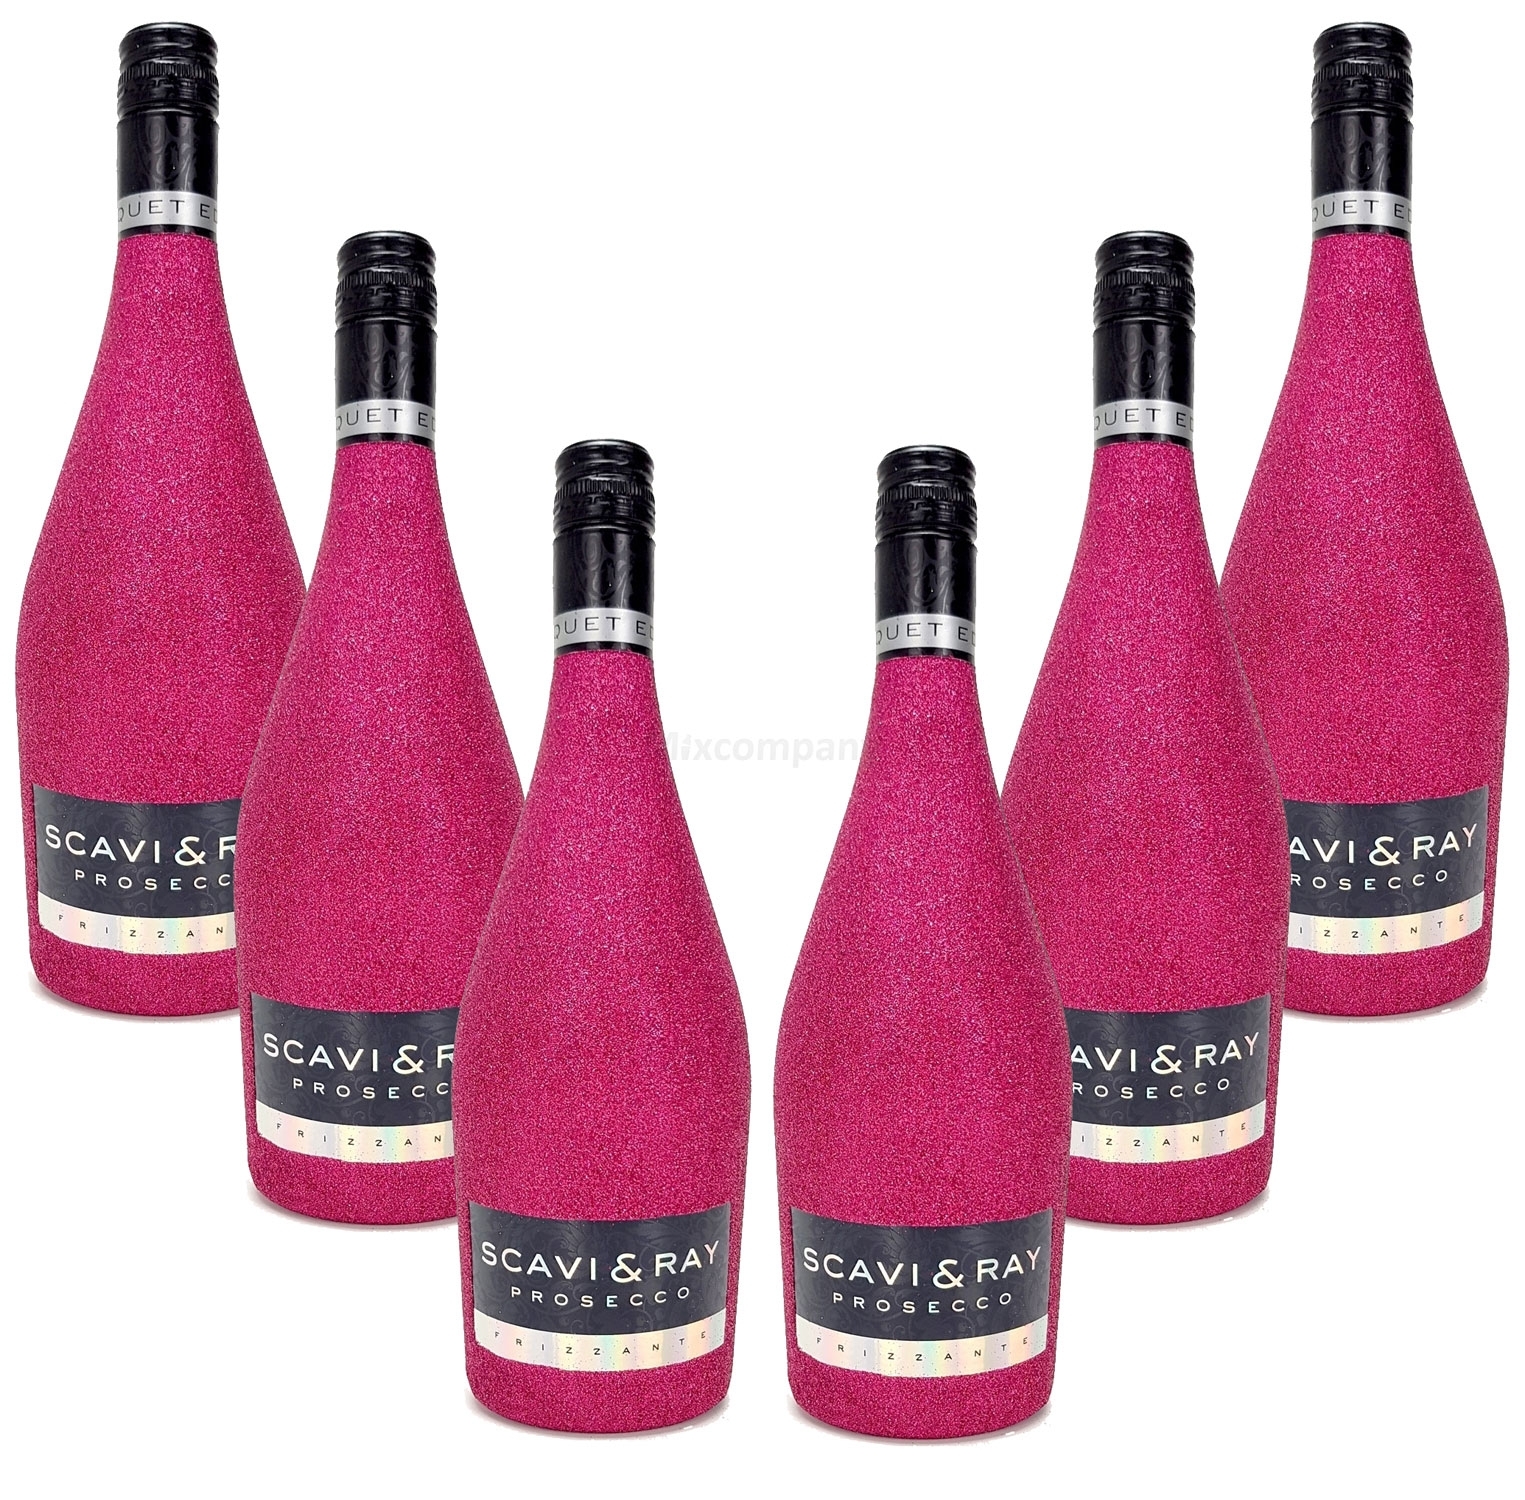 Scavi & Ray Prosecco Frizzante 0,75l (10,5% Vol) - Bling Bling Glitzer Glitzerflasche Flaschenveredelung für besondere Anlässe - Hot Pink Aktion - 6 Stück (6x 0,75l = 4,5l) -[Enthält Sulfite]